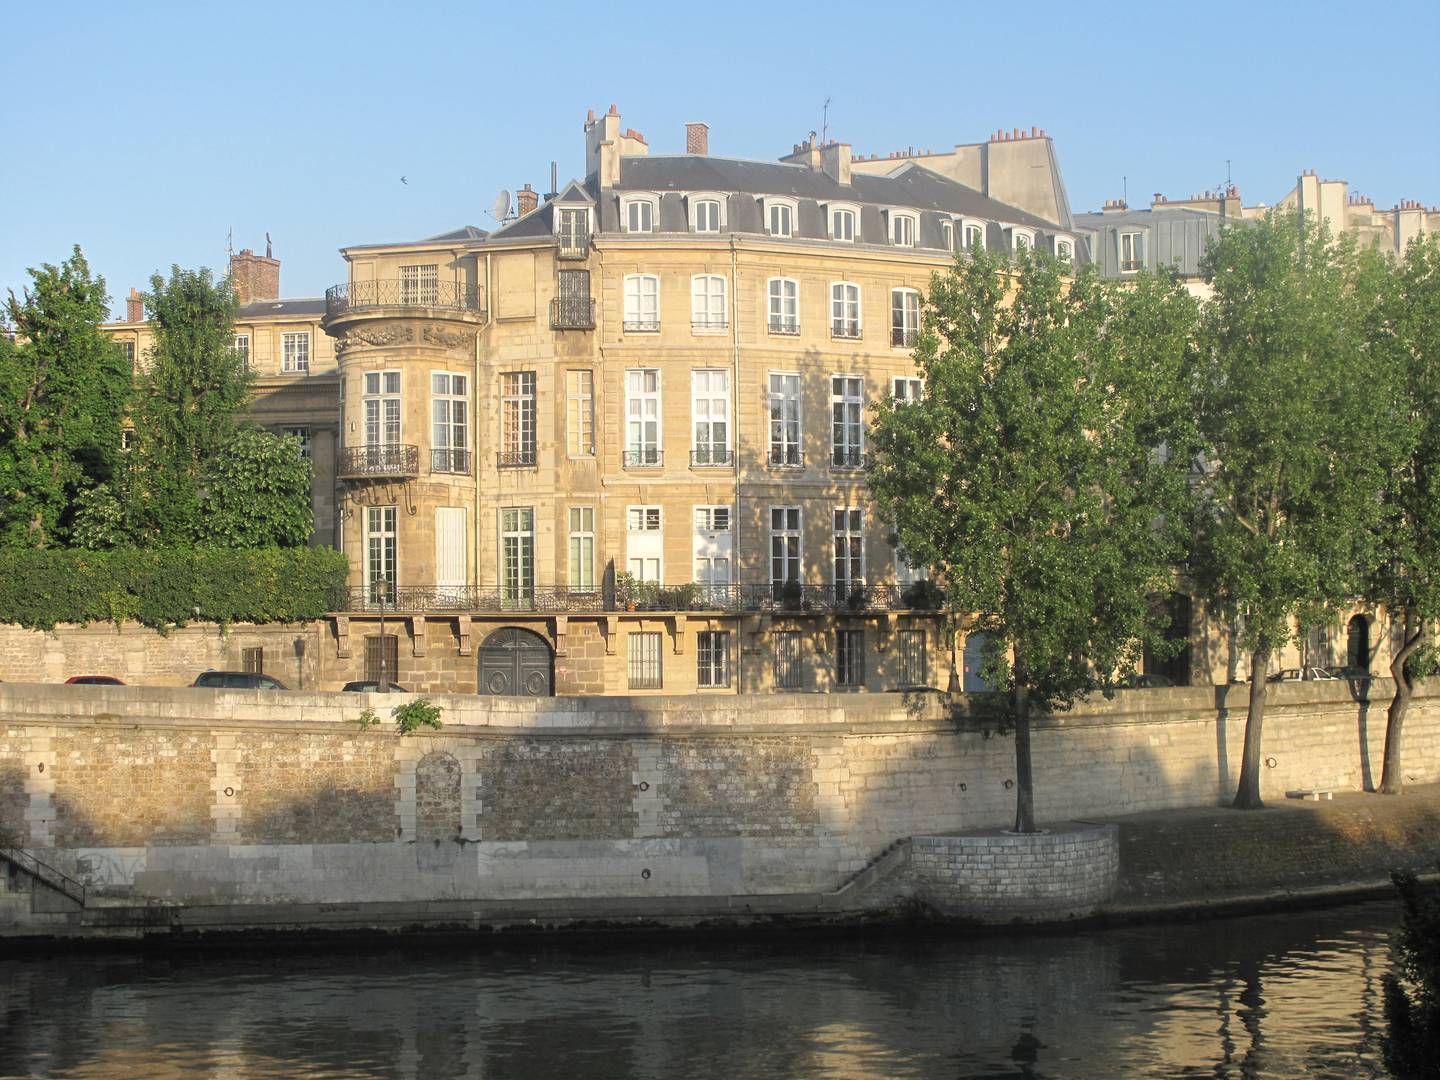 Отель Ламбер, служивший местом собраний польской эмиграции в Париже